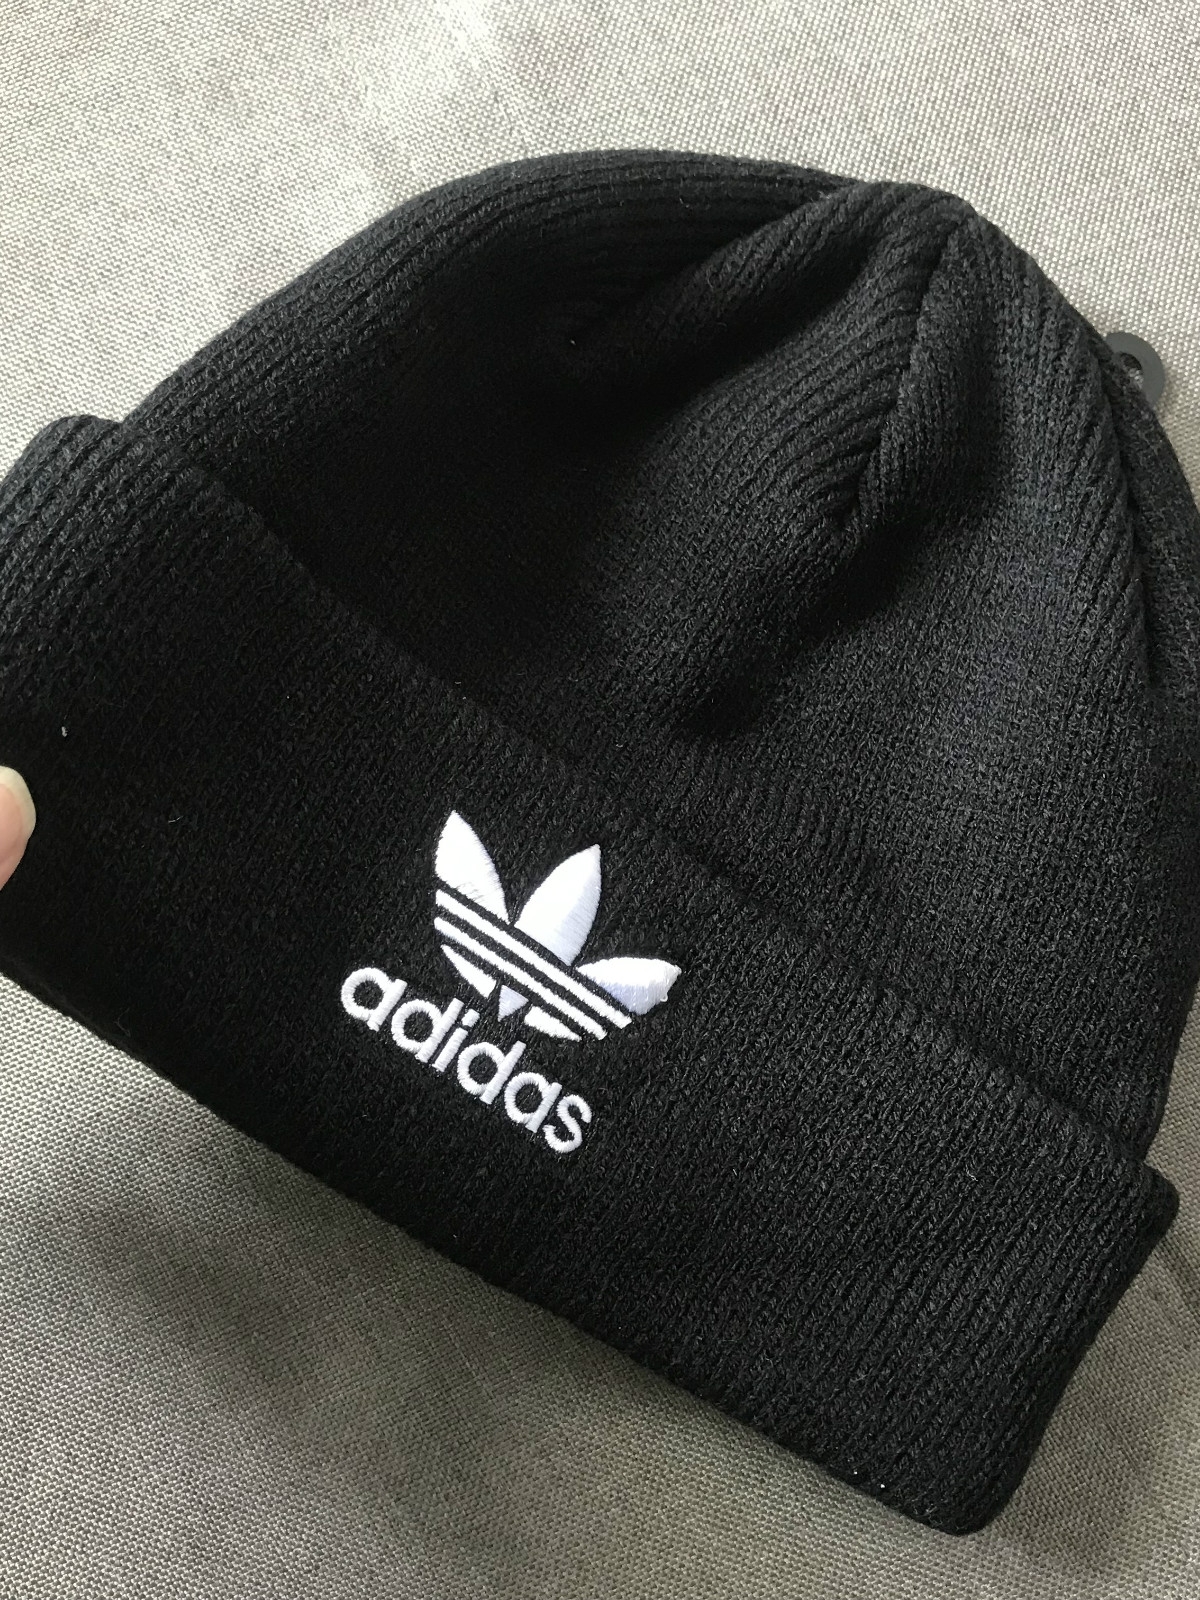 Adidas 三叶草阿迪刺绣针织毛线帽